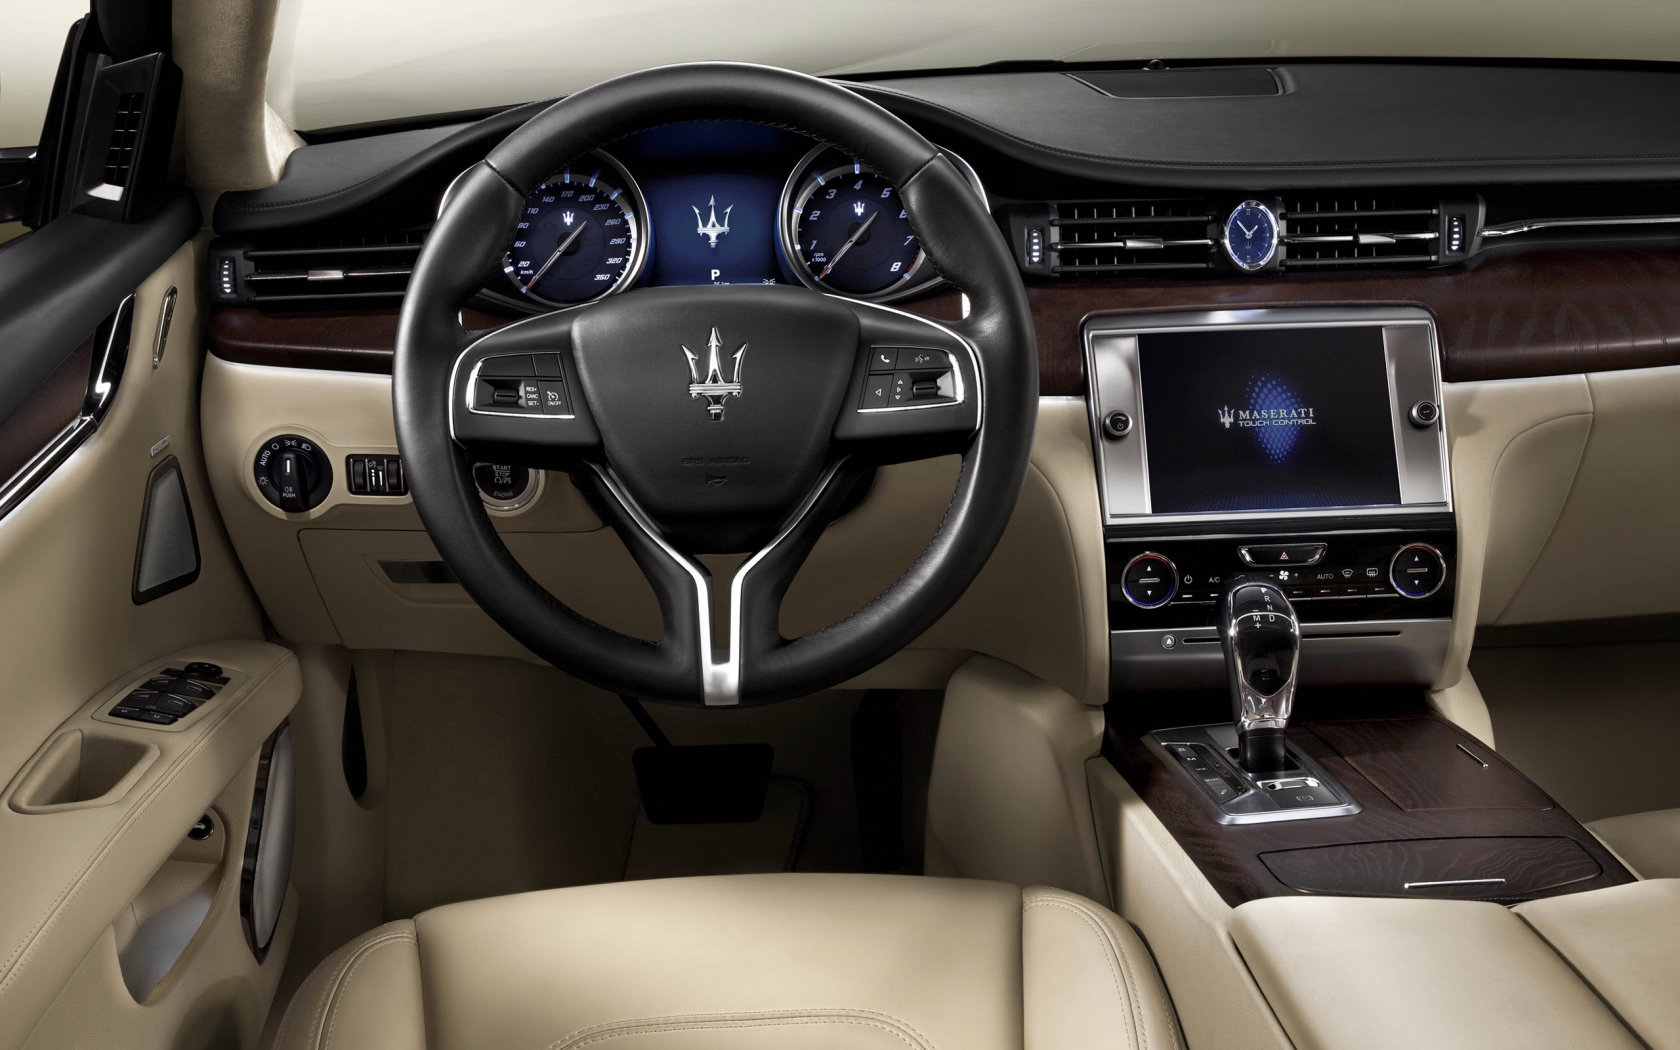 Interior of Maserati Quattroporte for 1680 x 1050 widescreen resolution